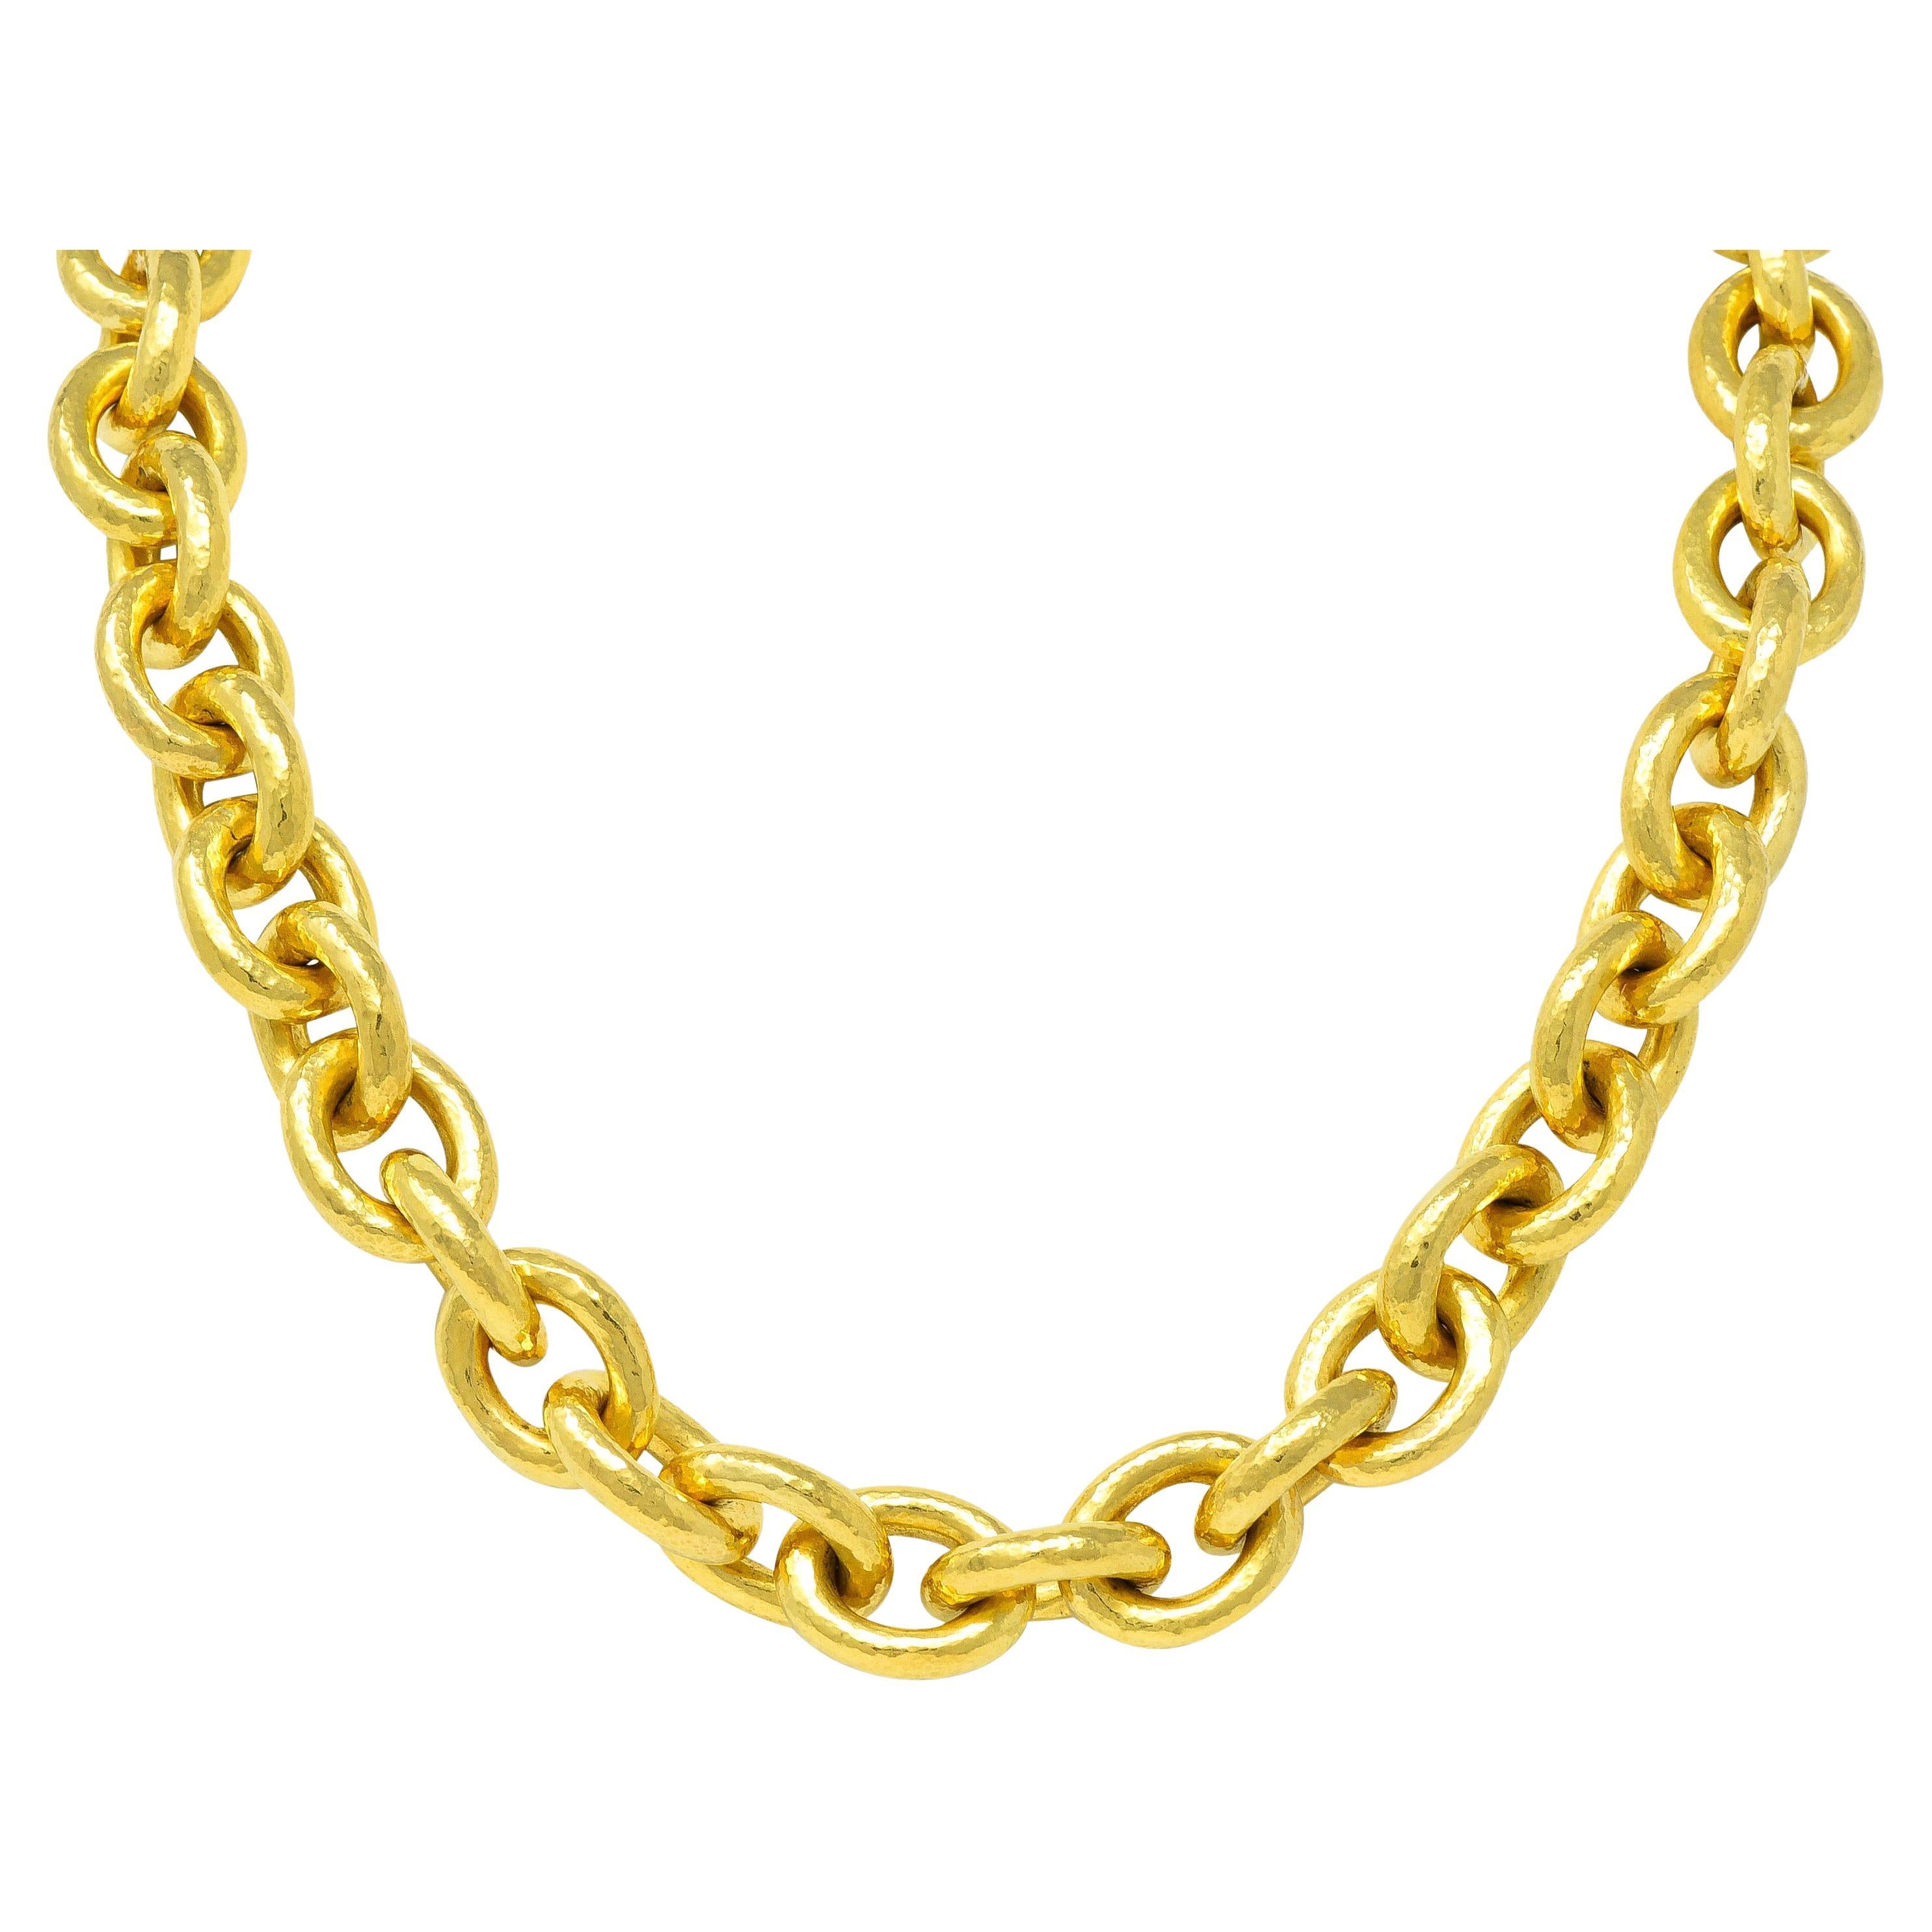 Elizabeth Locke 19 Karat Gold Hammered Cable Link Chain Vintage Necklace For Sale